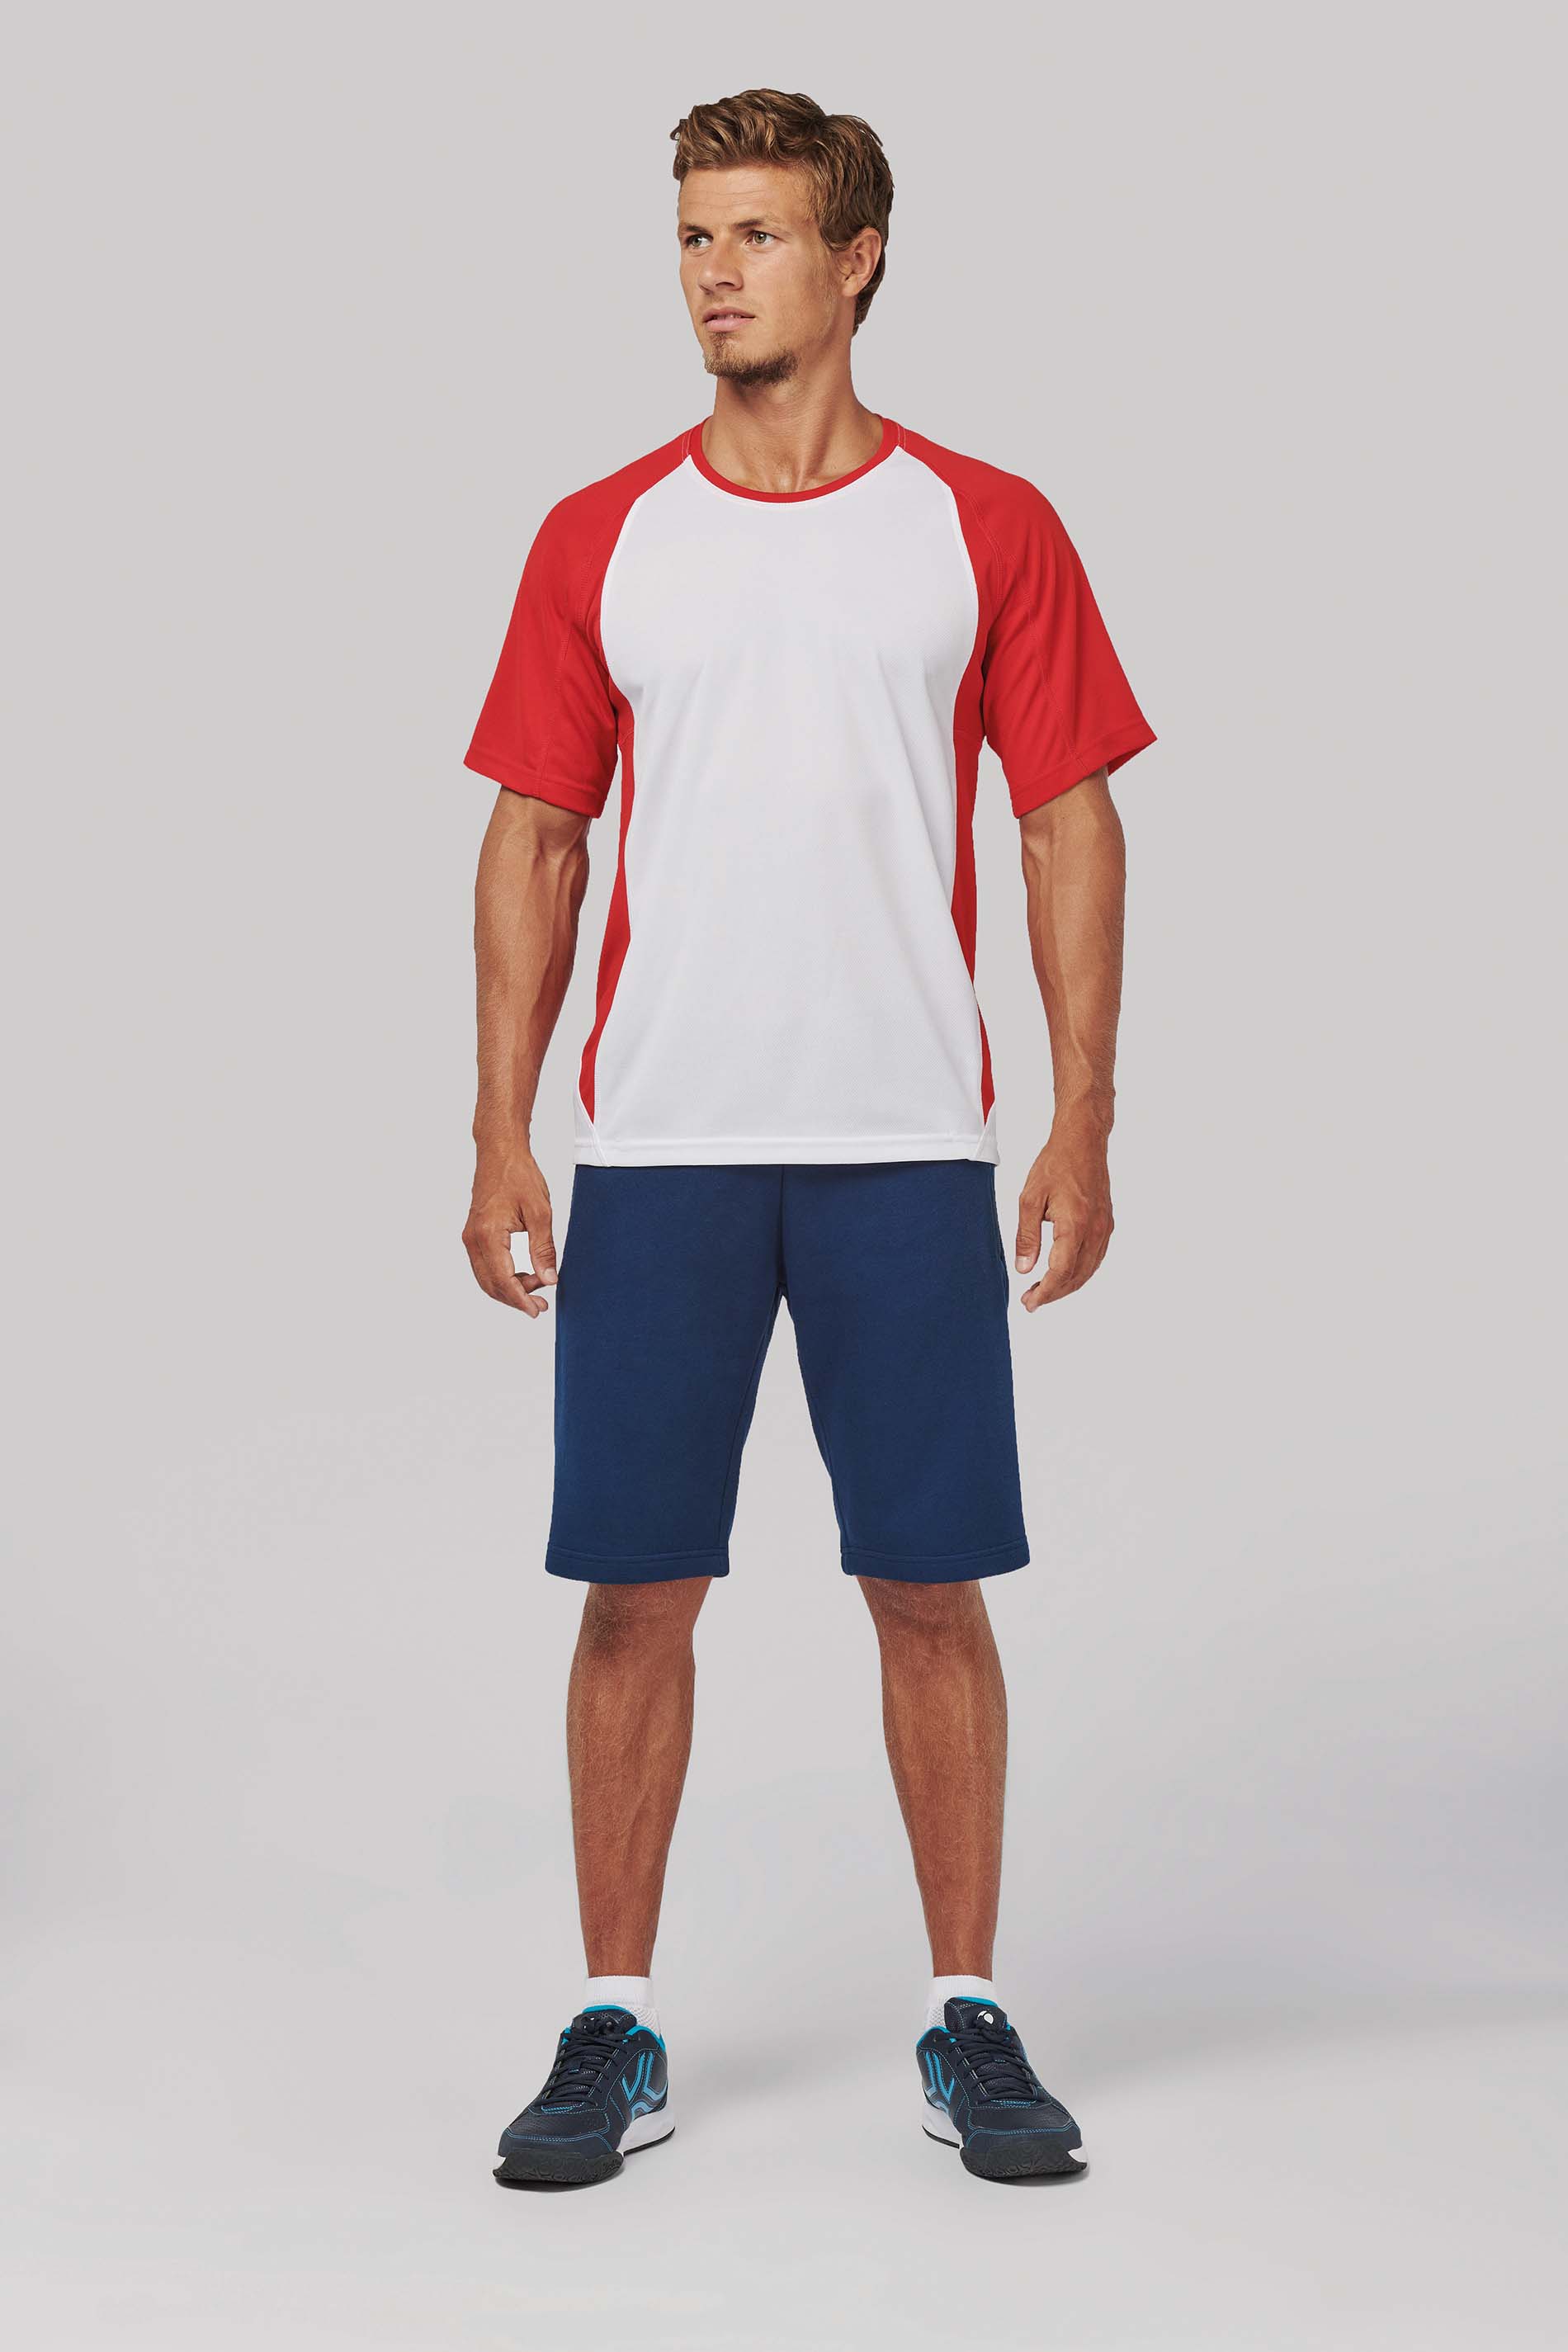 Pánské dvoubarevné sportovní trièko - Výprodej - zvìtšit obrázek